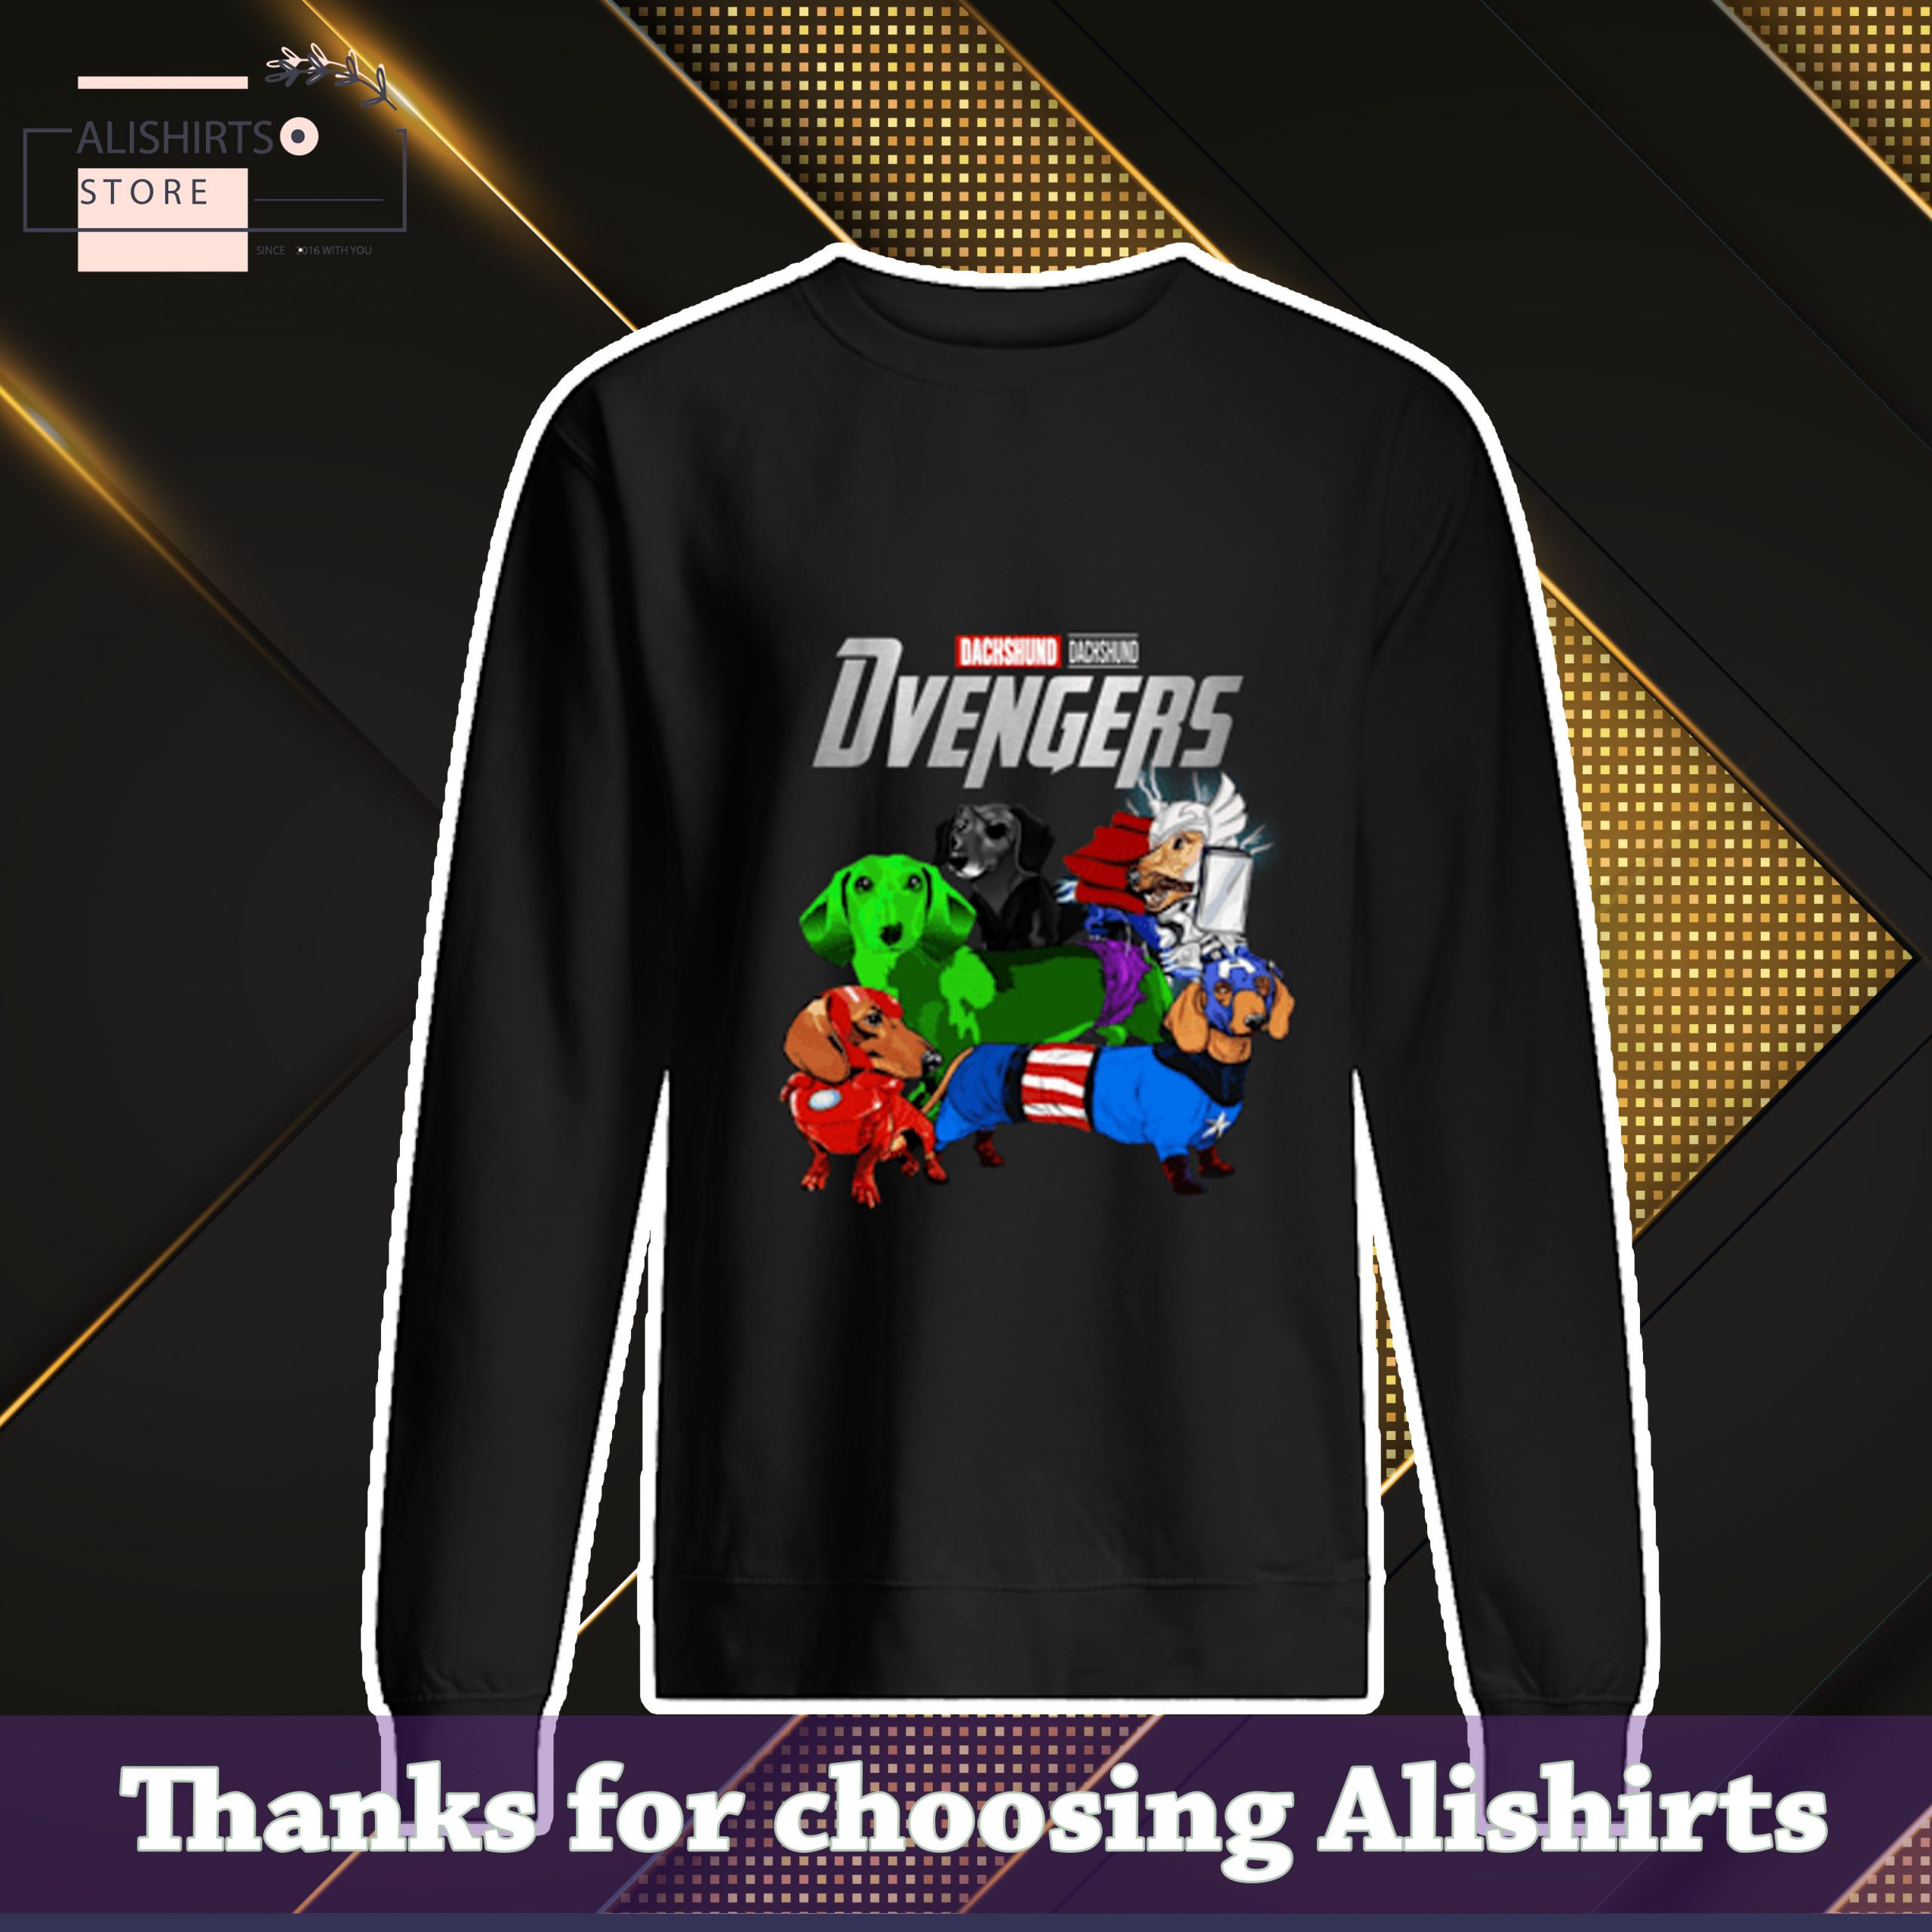 Marvel Avengers Endgame Dachshund dog Avengers avengers shirt